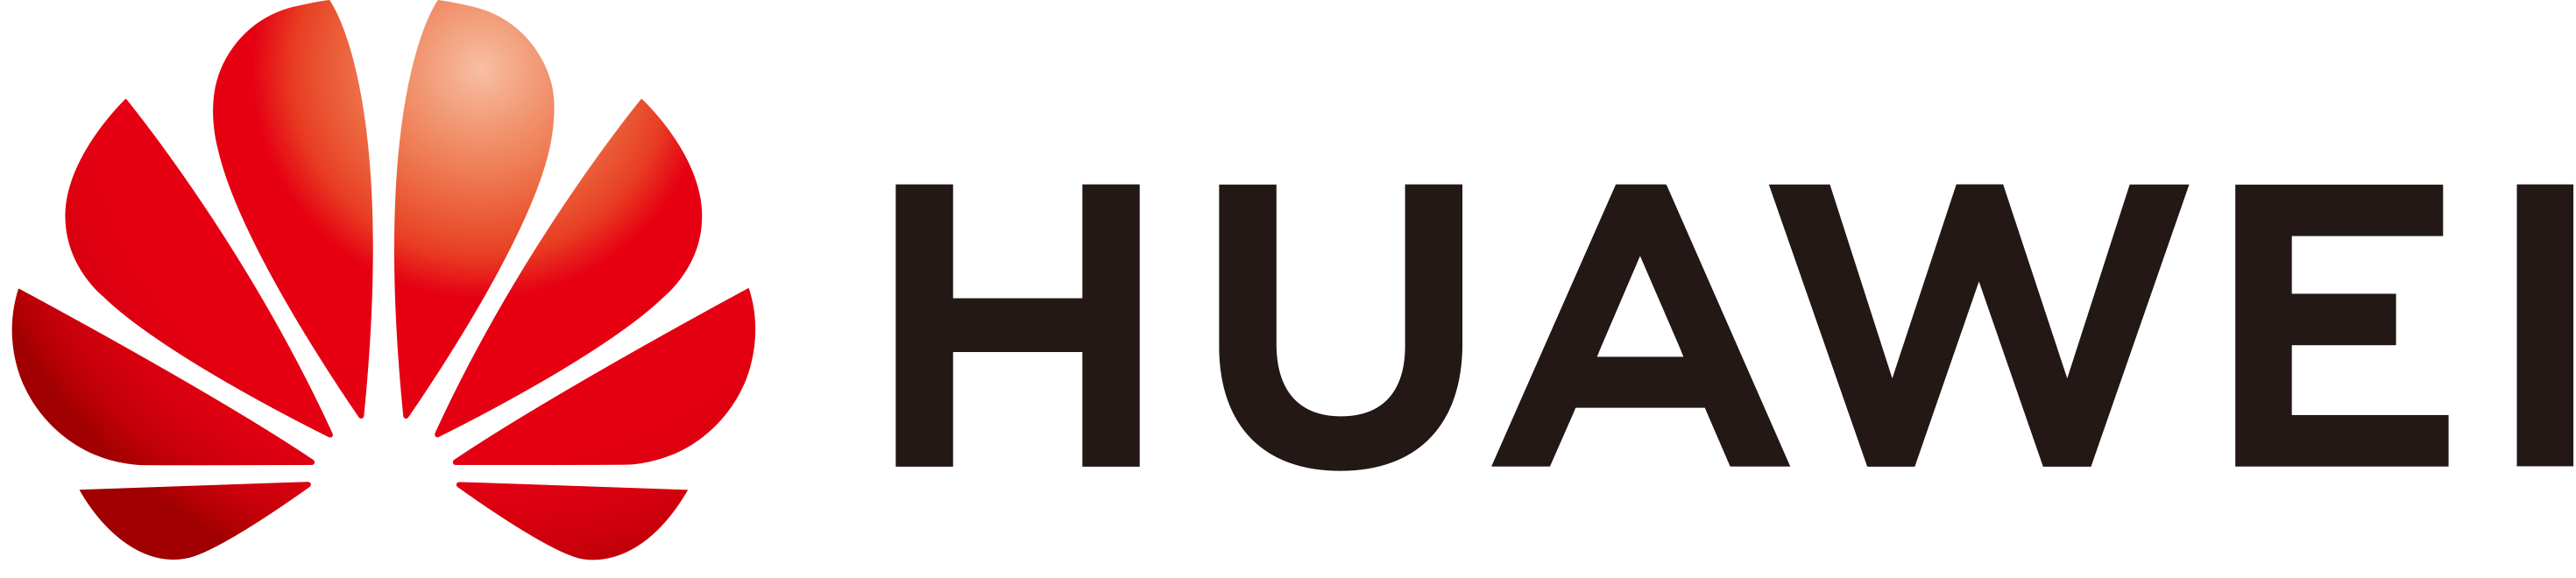 logo Huawei poziom